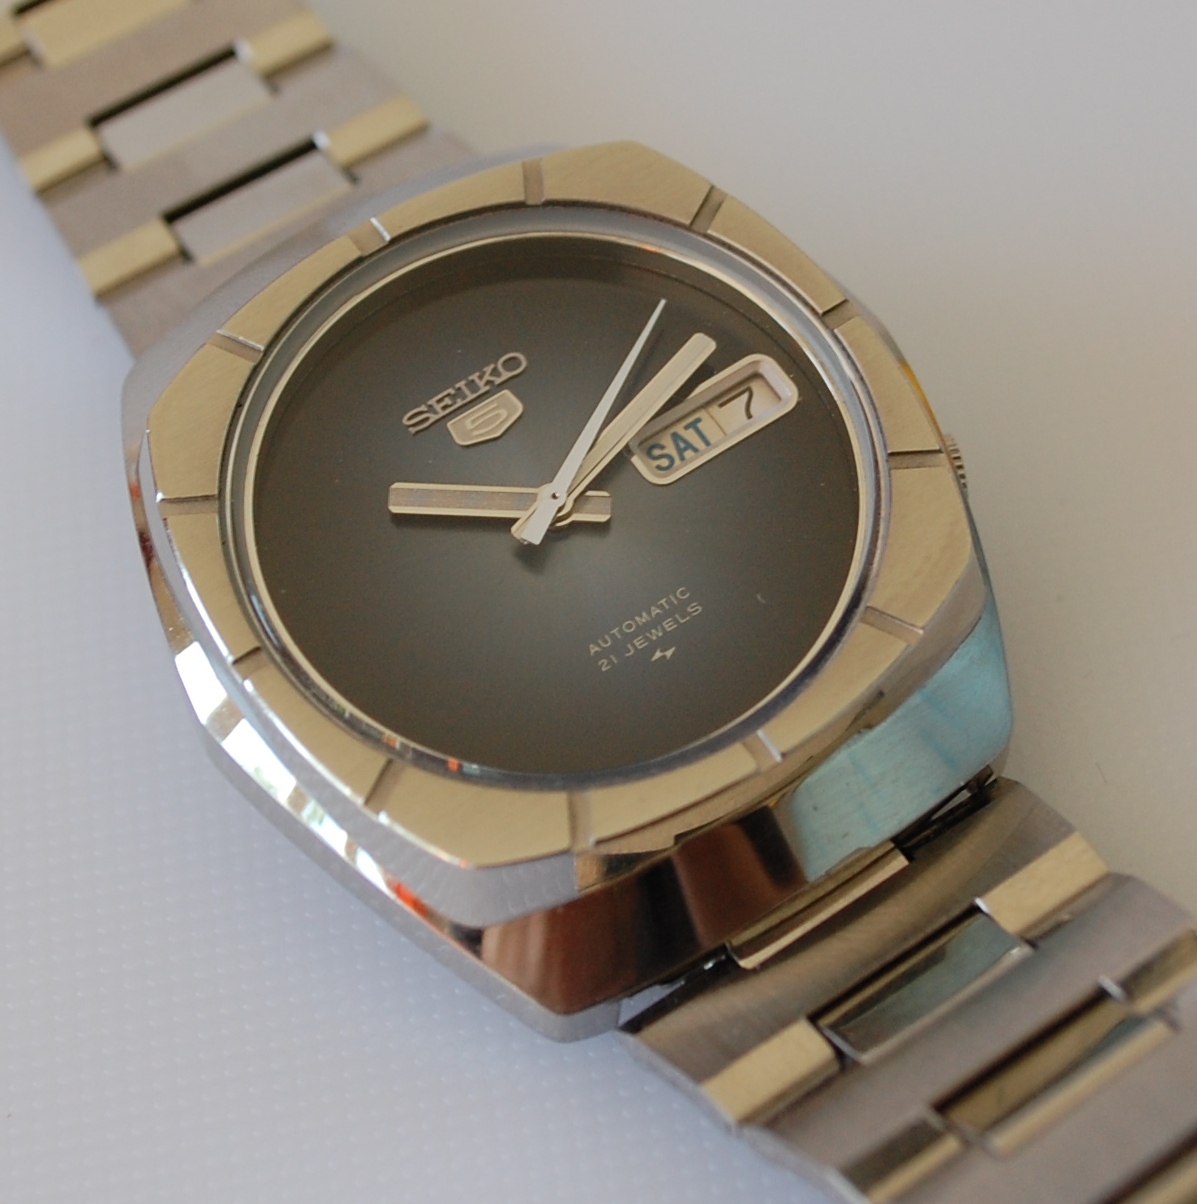 SOLD 1975 Seiko 5 Big Bezel - Birth Year Watches